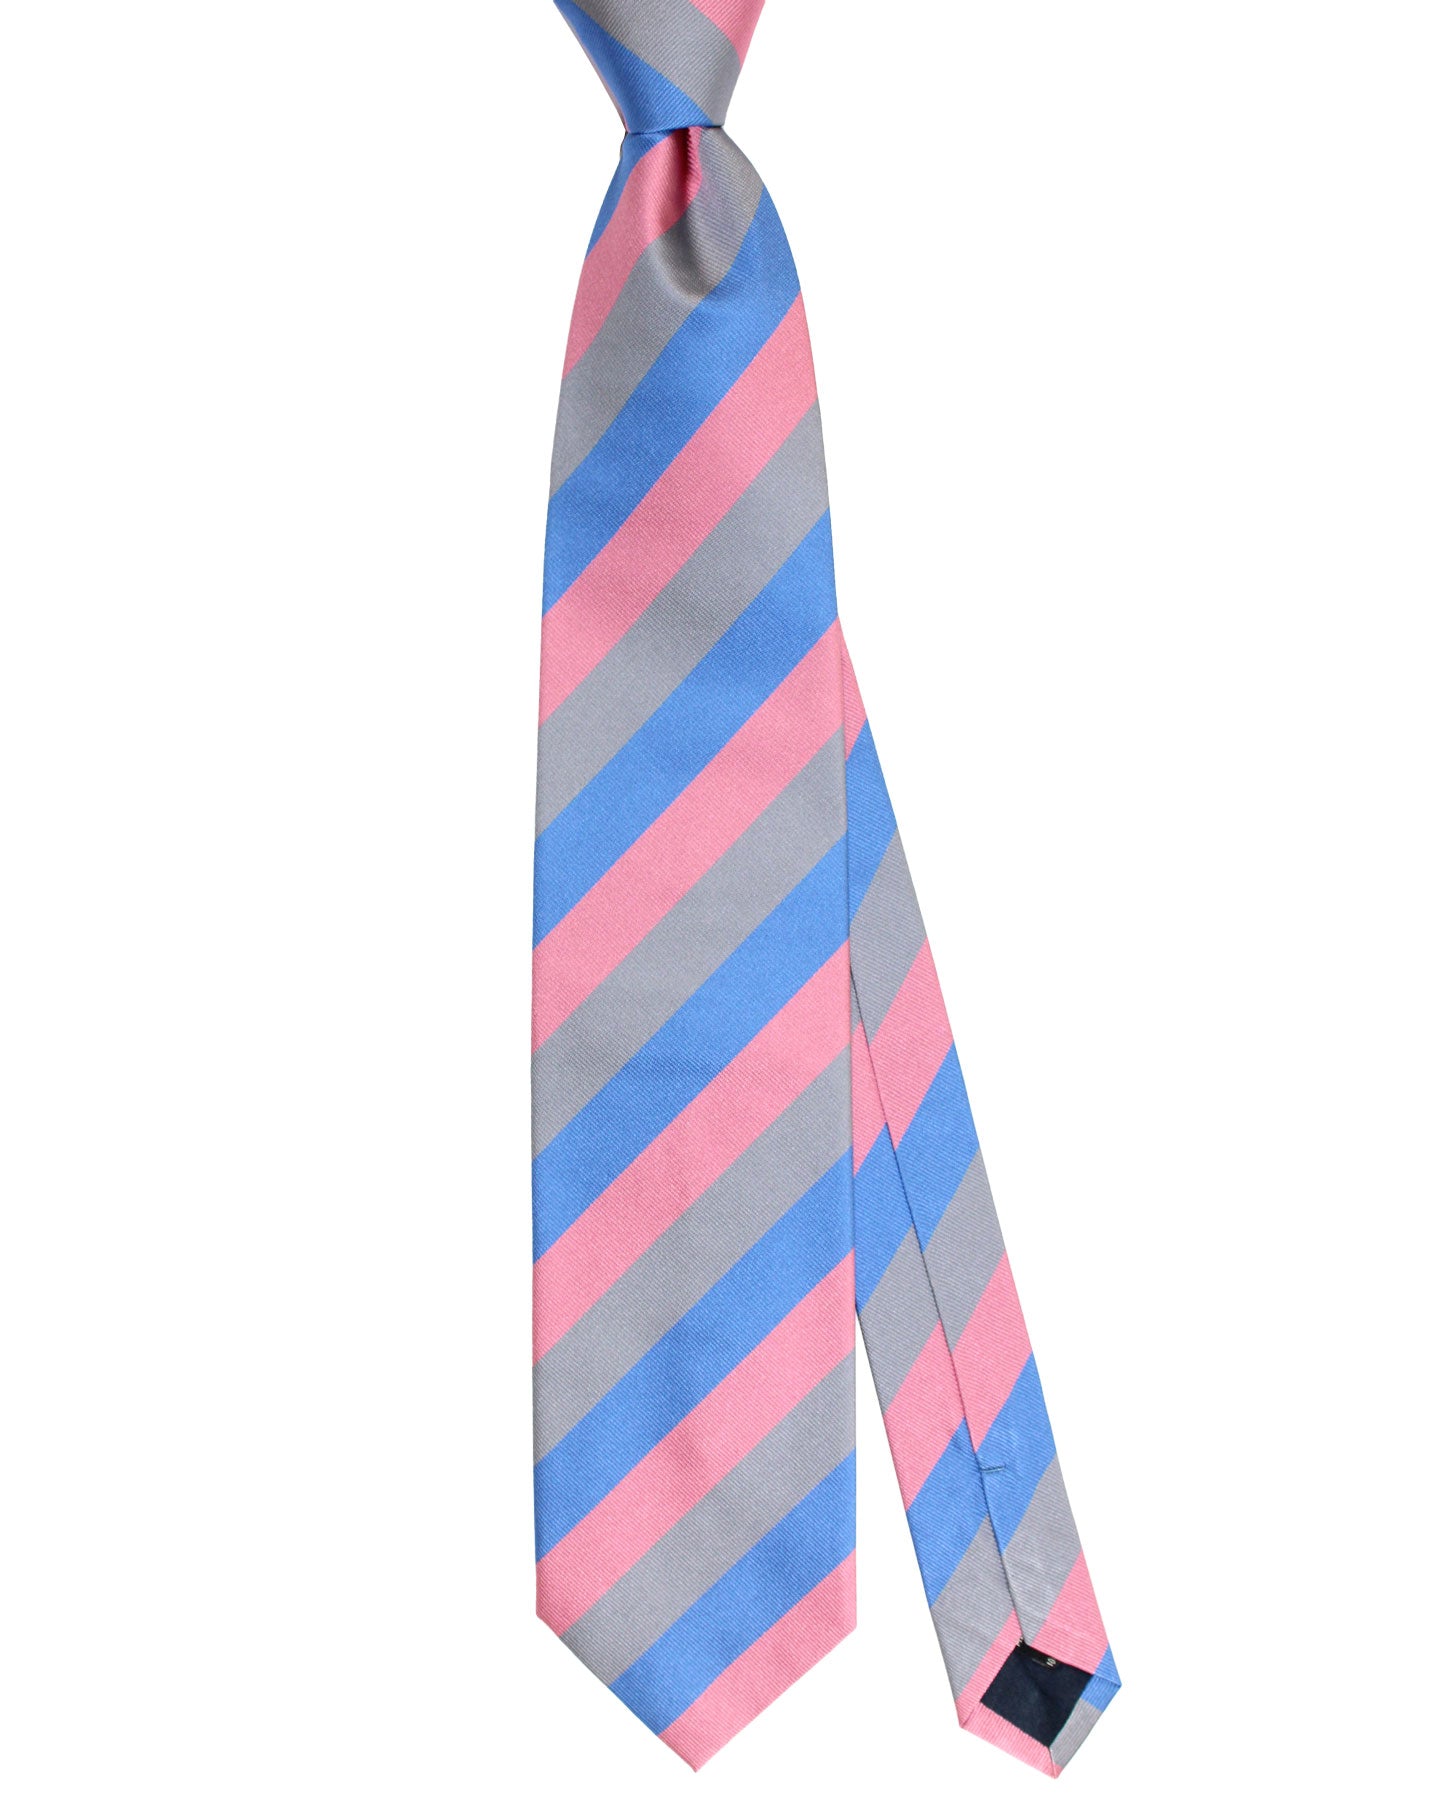 E. Marinella Tie Pink Blue Gray Stripes Design